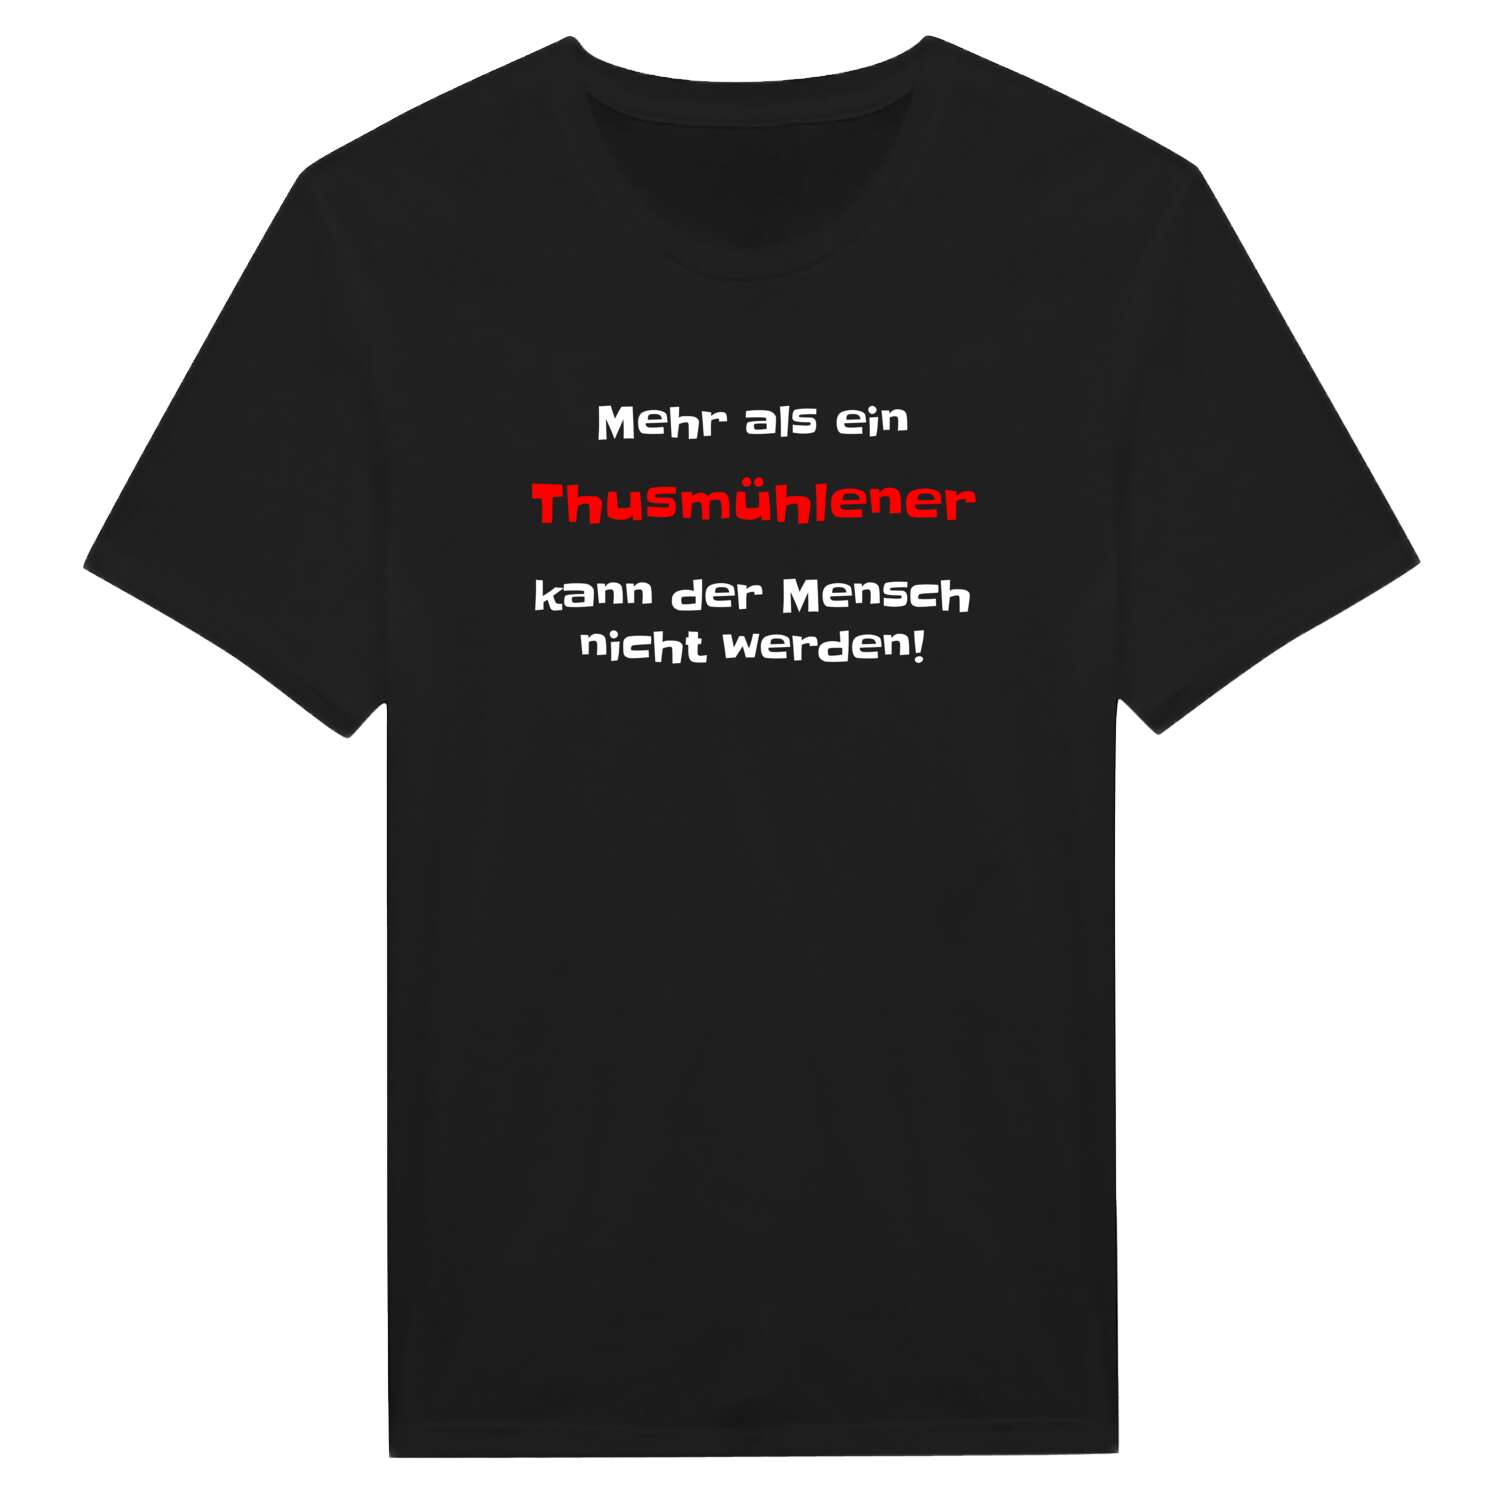 Thusmühle T-Shirt »Mehr als ein«